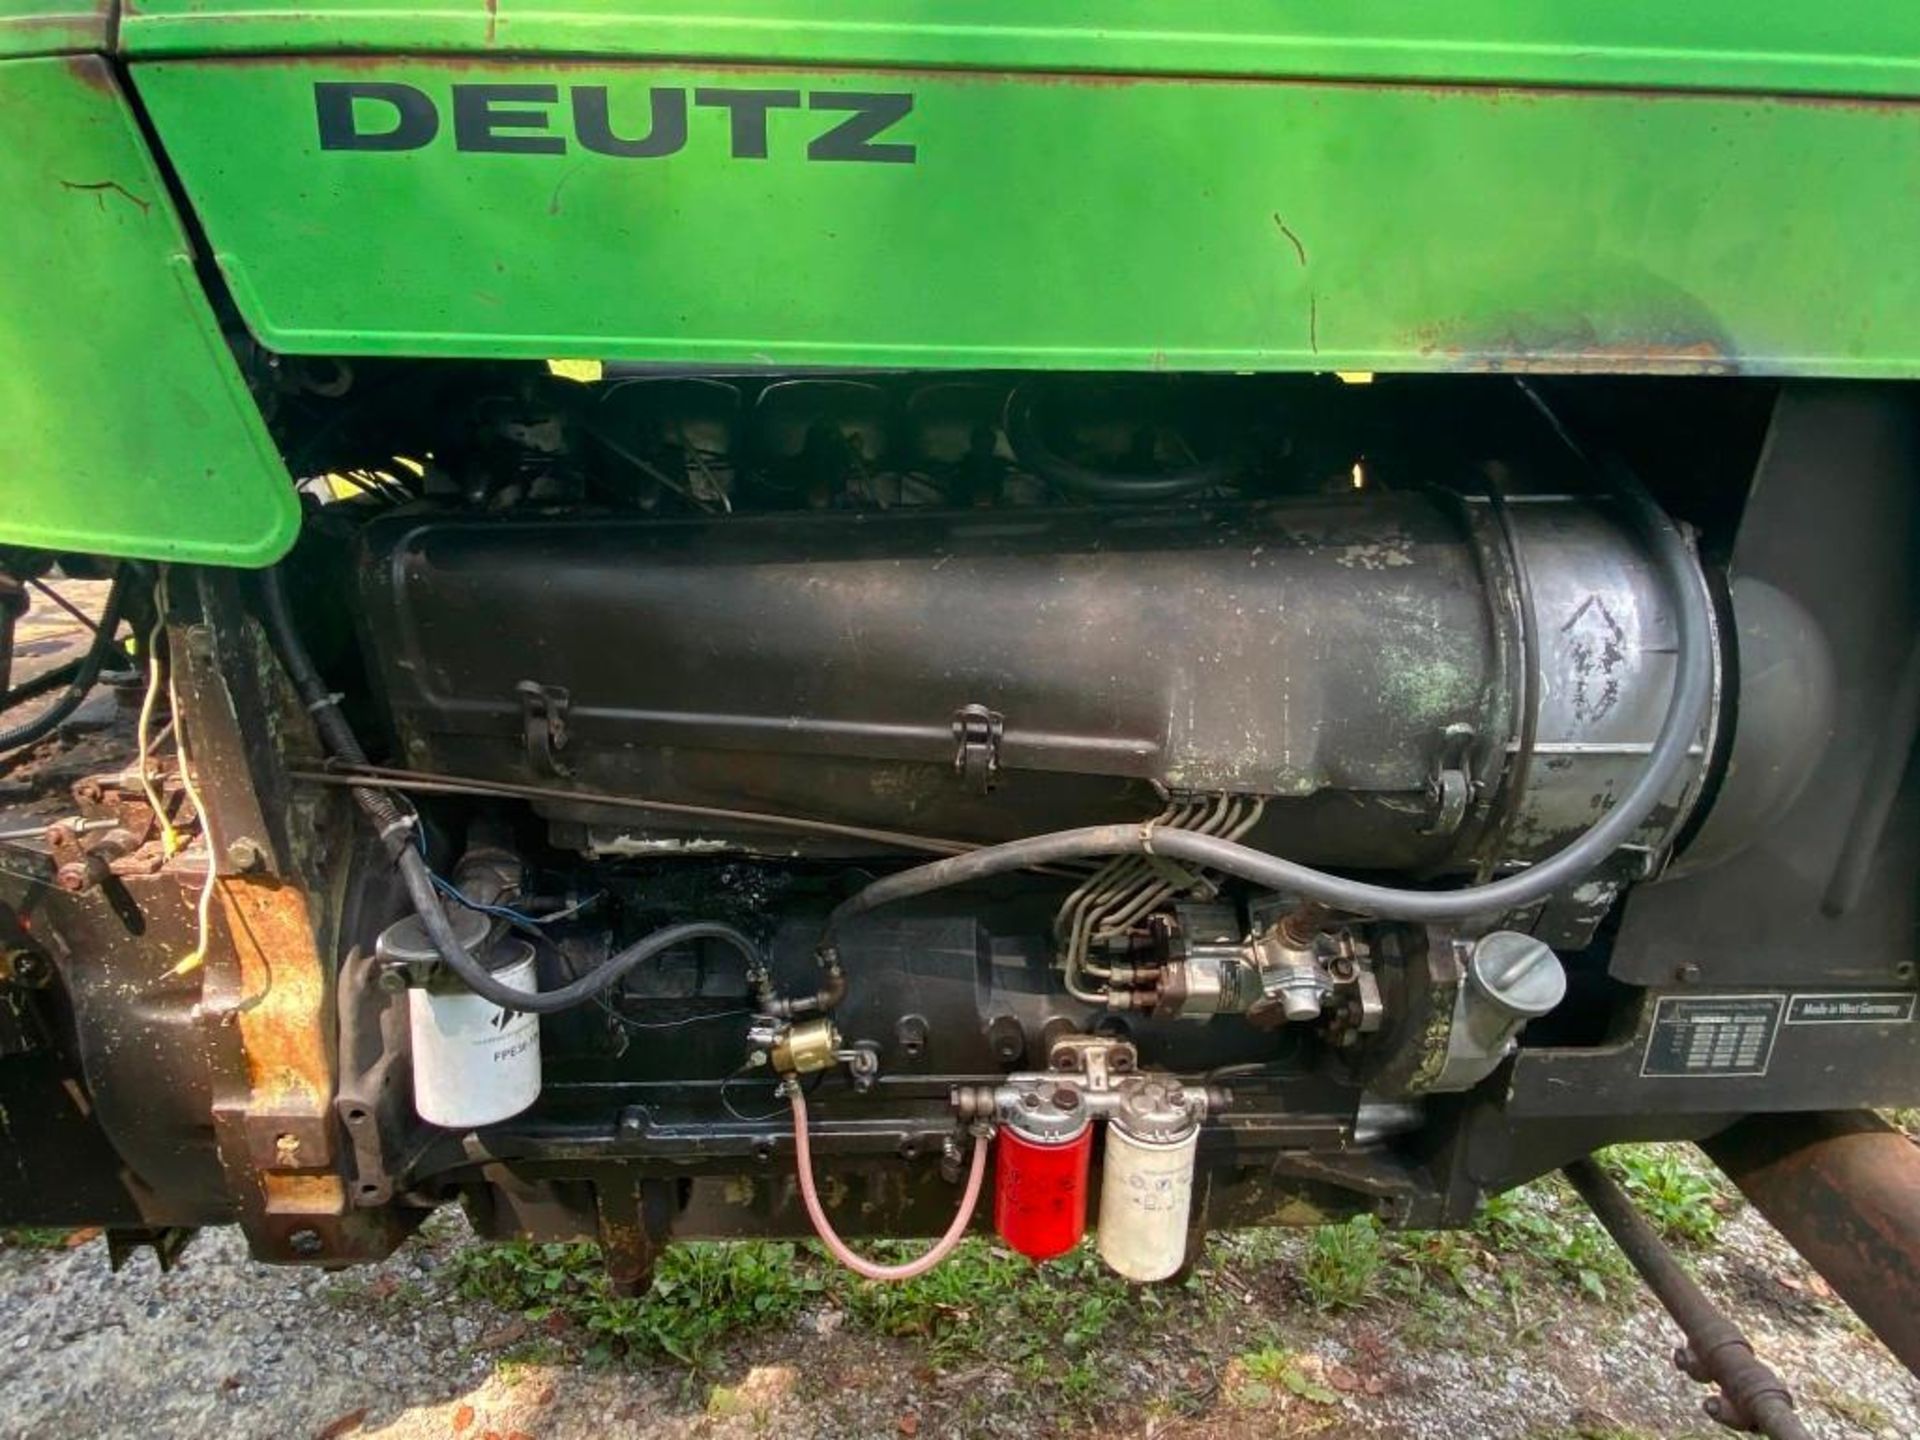 Deutz D10006 Tractor - Image 23 of 30